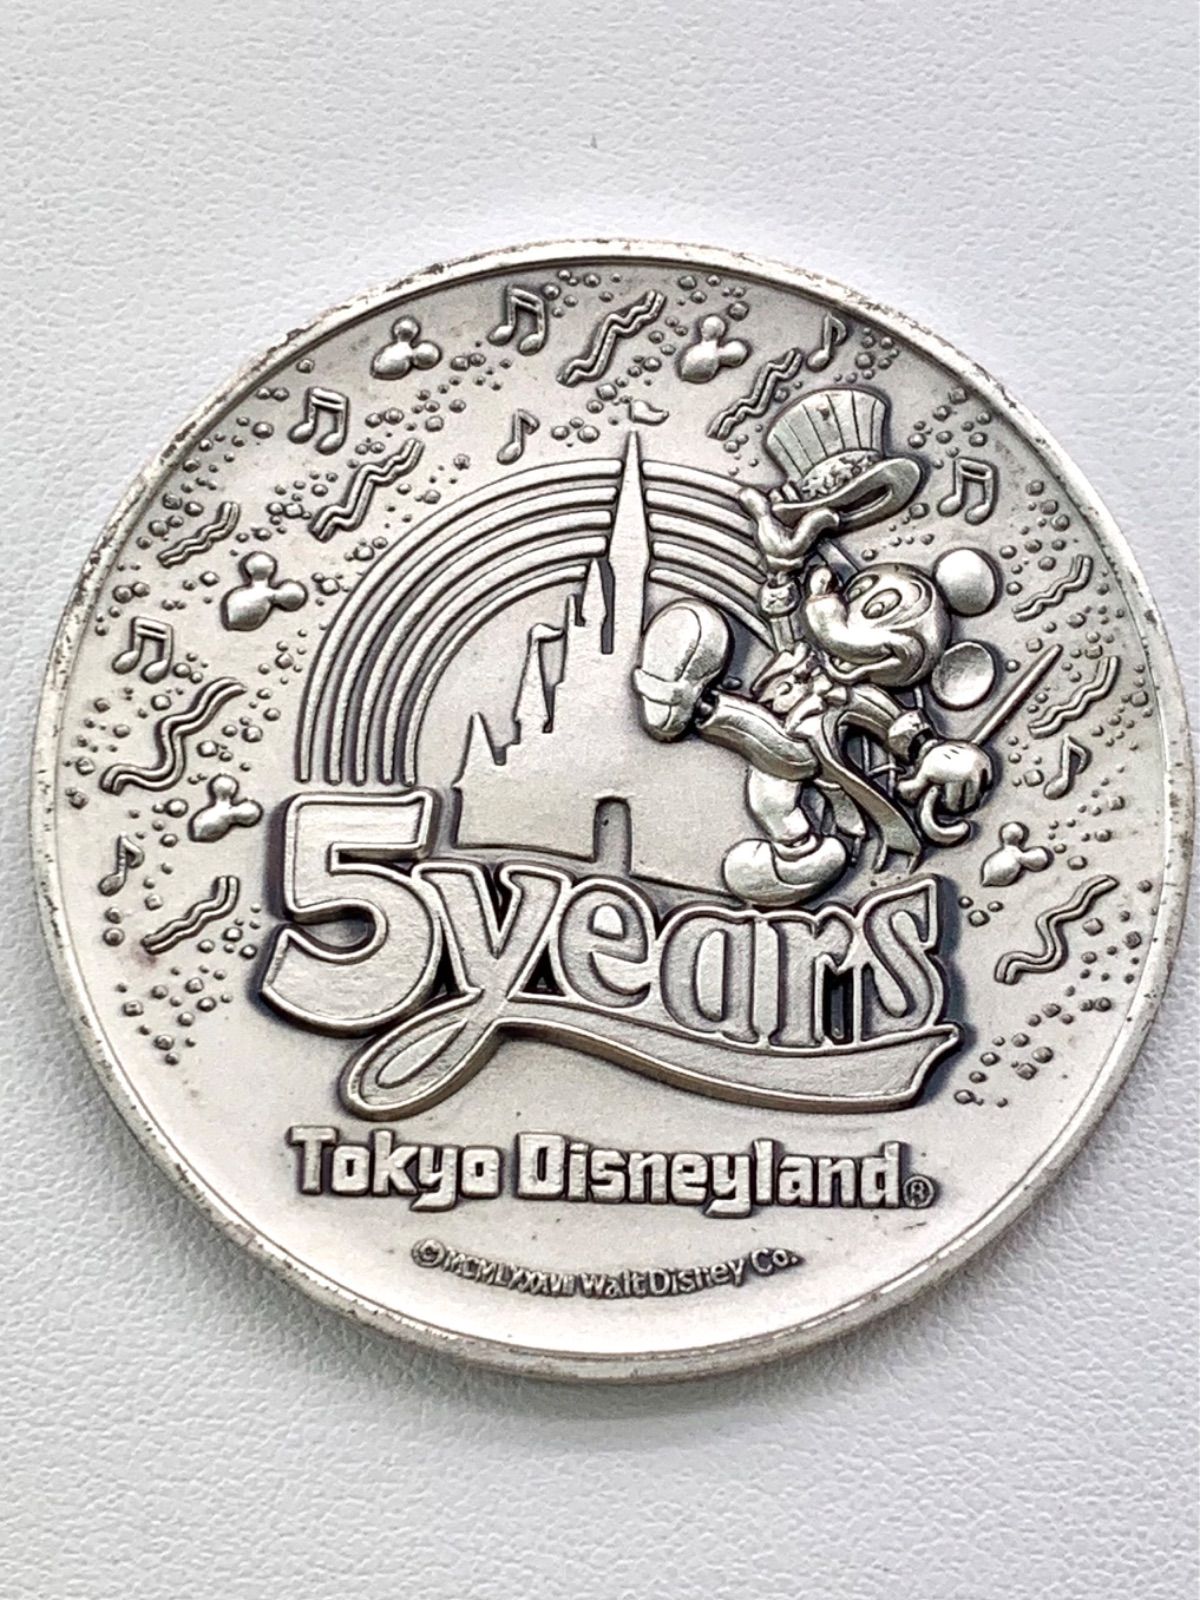 東京ディズニーランド 5周年記念 純銀製 限定メダル - おもちゃ